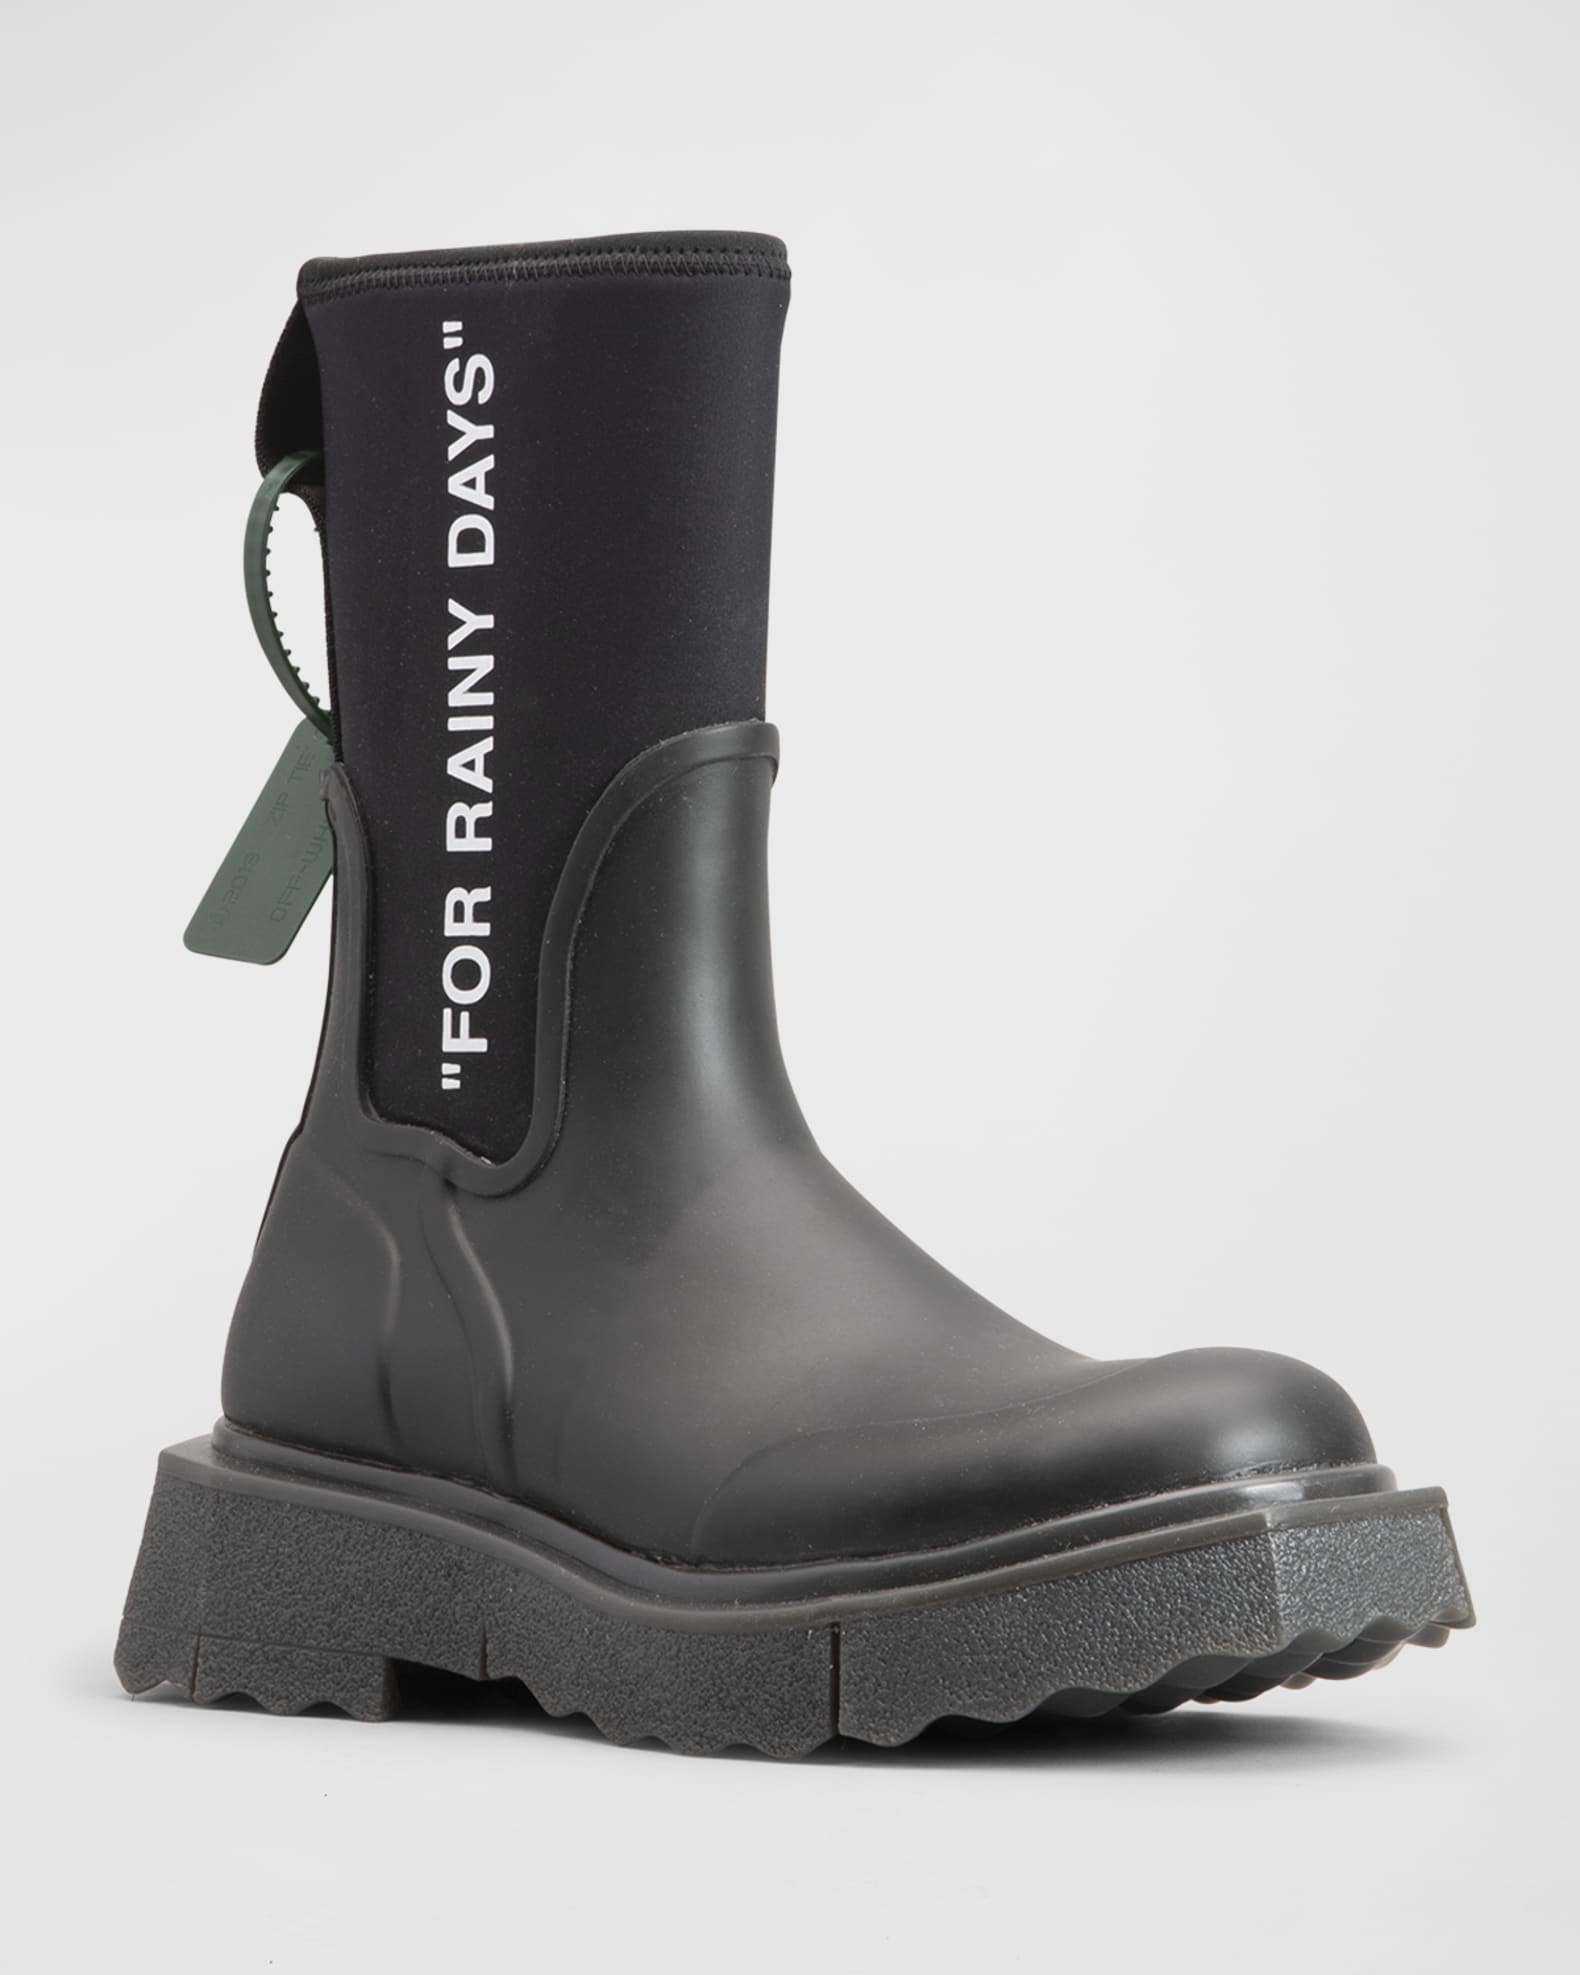 Off-White Sponge Rainy Rain Boots | Neiman